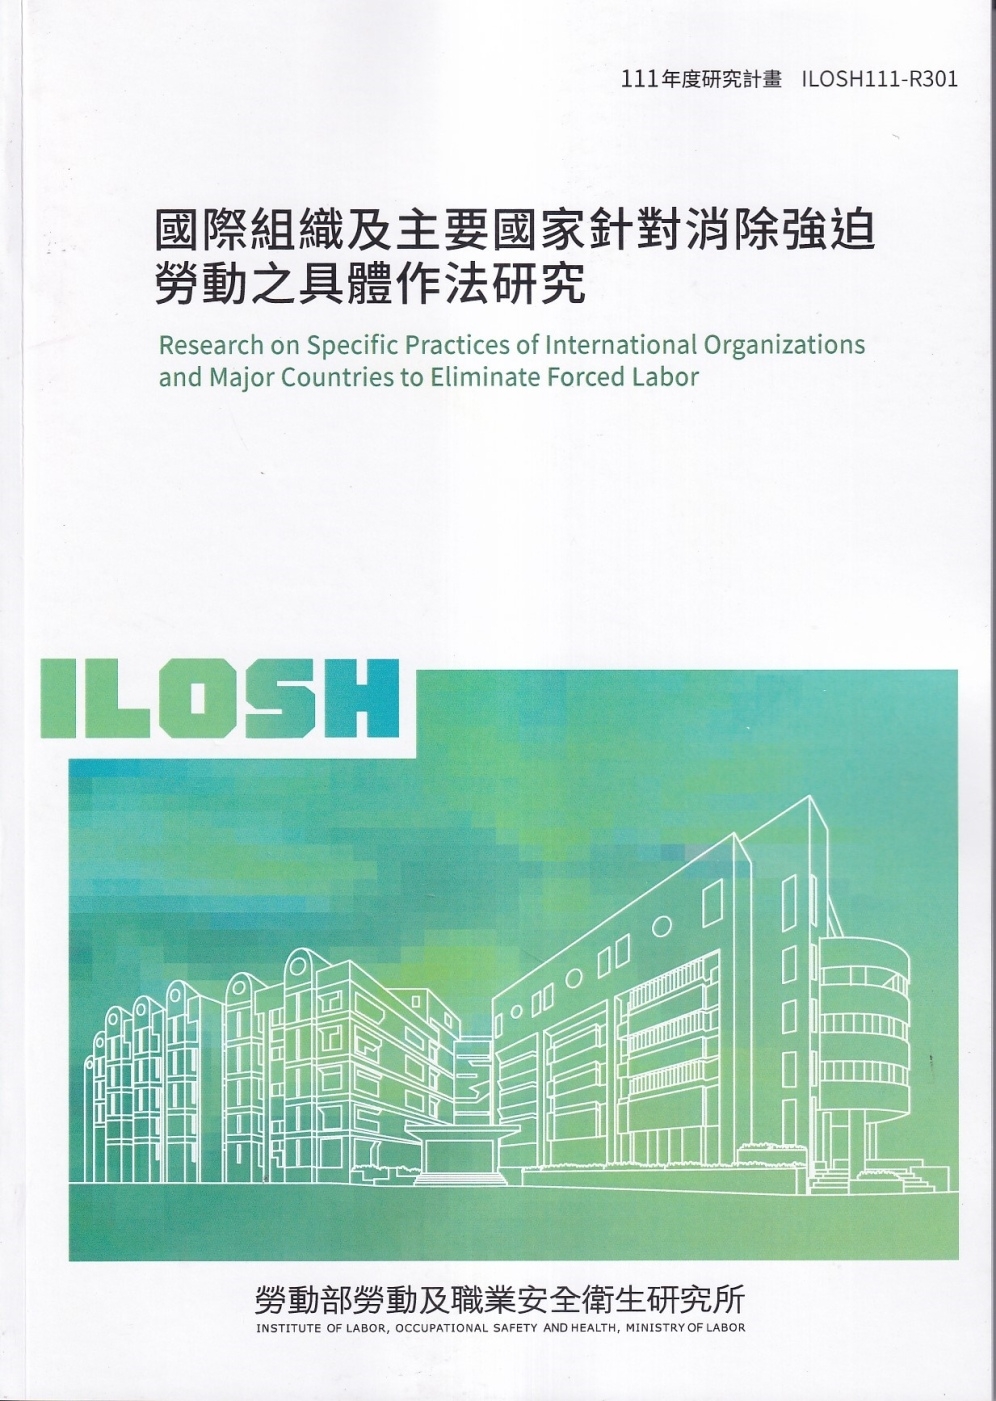 國際組織及主要國家針對消除強迫勞動之具體作法研究ILOSH111-R301